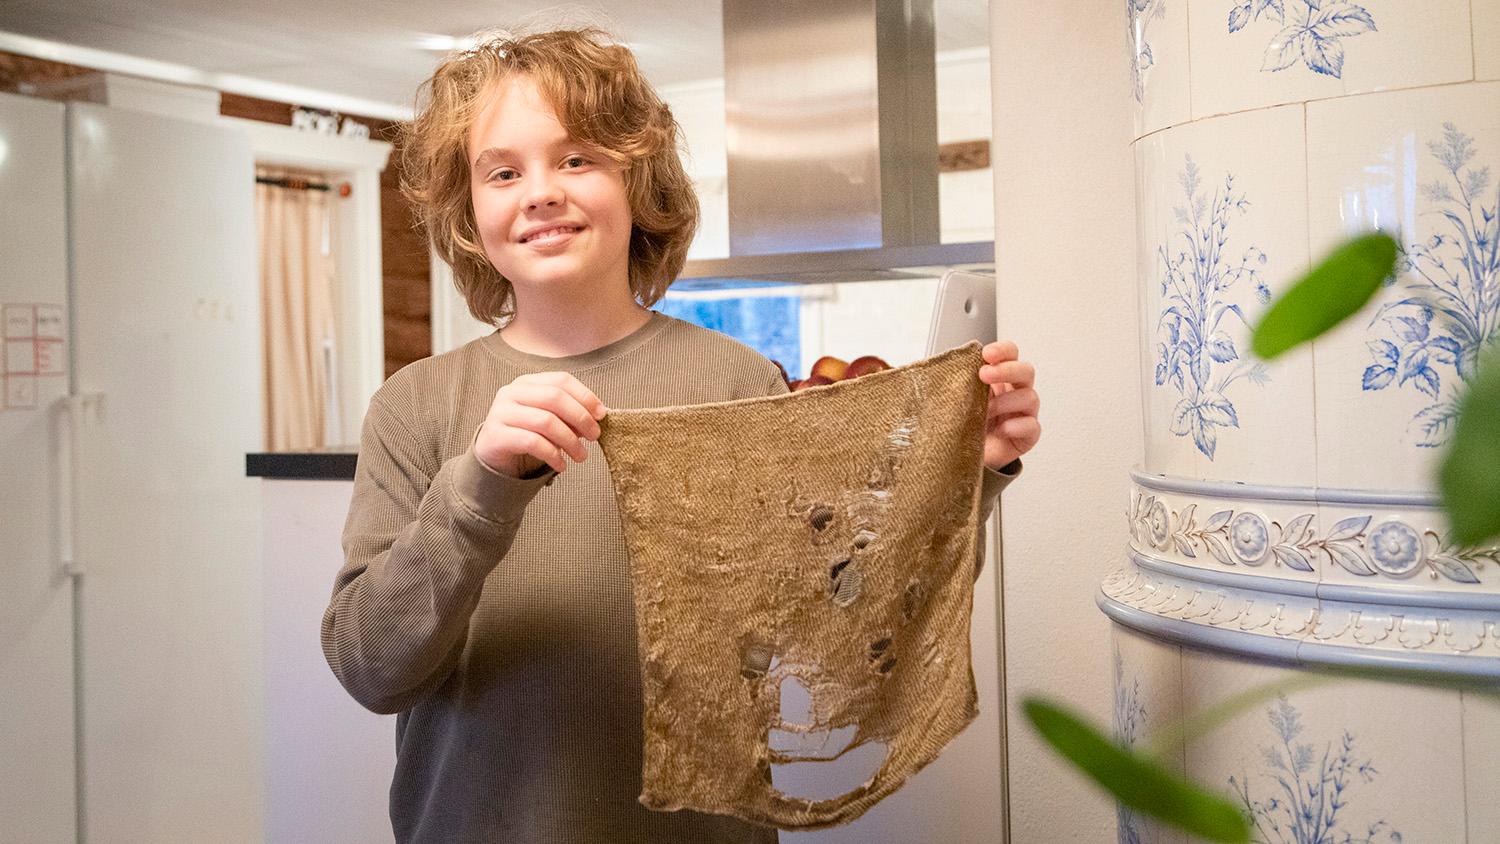 Allan visar upp den 16 år gamla trasan av lin. De är kokbara och blir fräscha igen på direkten, försäkrar pappa Robert Örtegren.